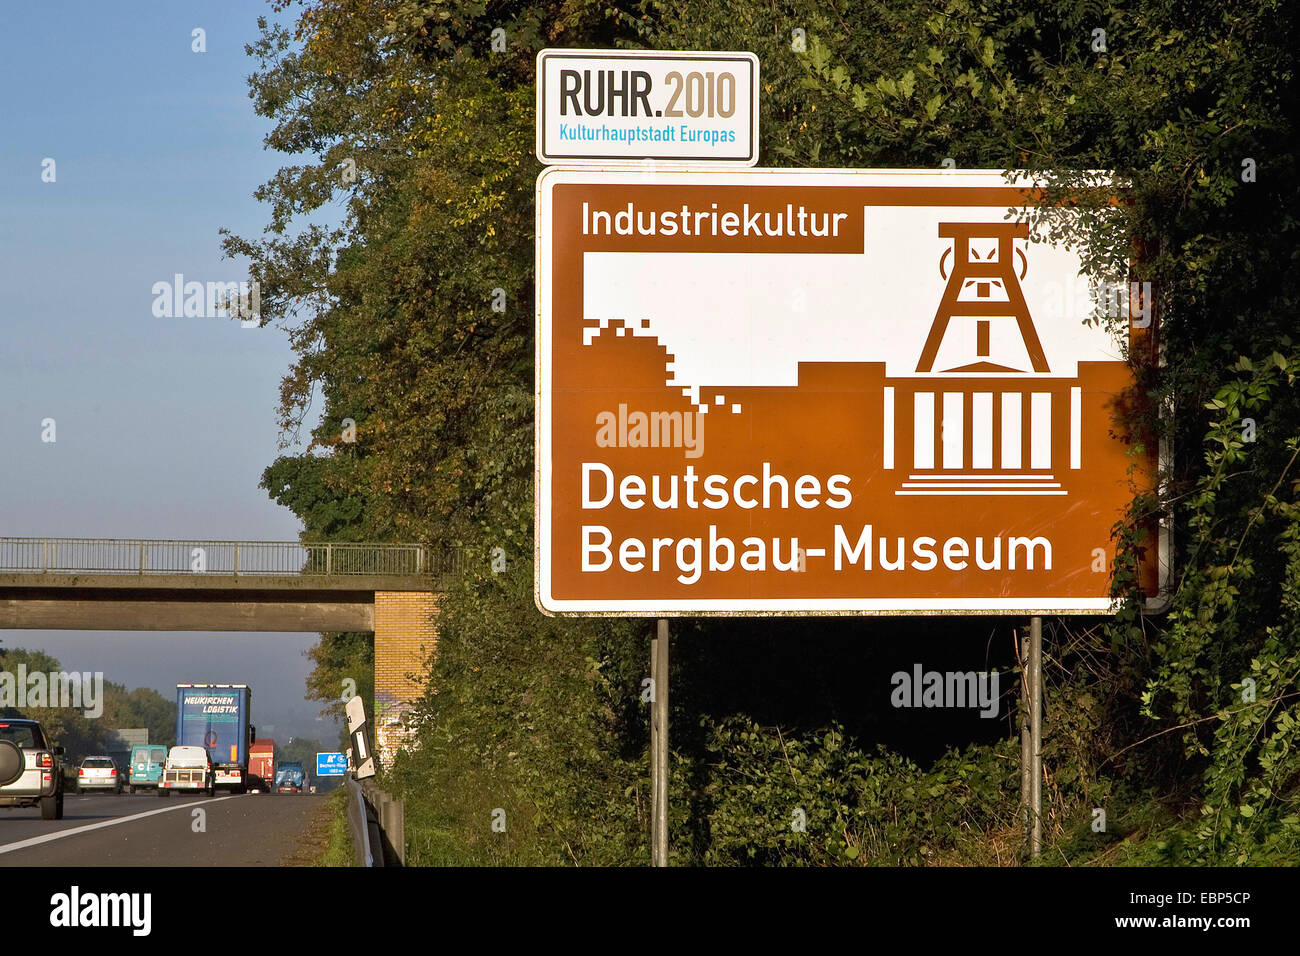 Informazioni registrazione su una autostrada nel Ruhrgebiet circa il tedesco Museo Minerario, Deutsches Bergbau-Museum Bochum, in Germania, in Renania settentrionale-Vestfalia, la zona della Ruhr, Bochum Foto Stock